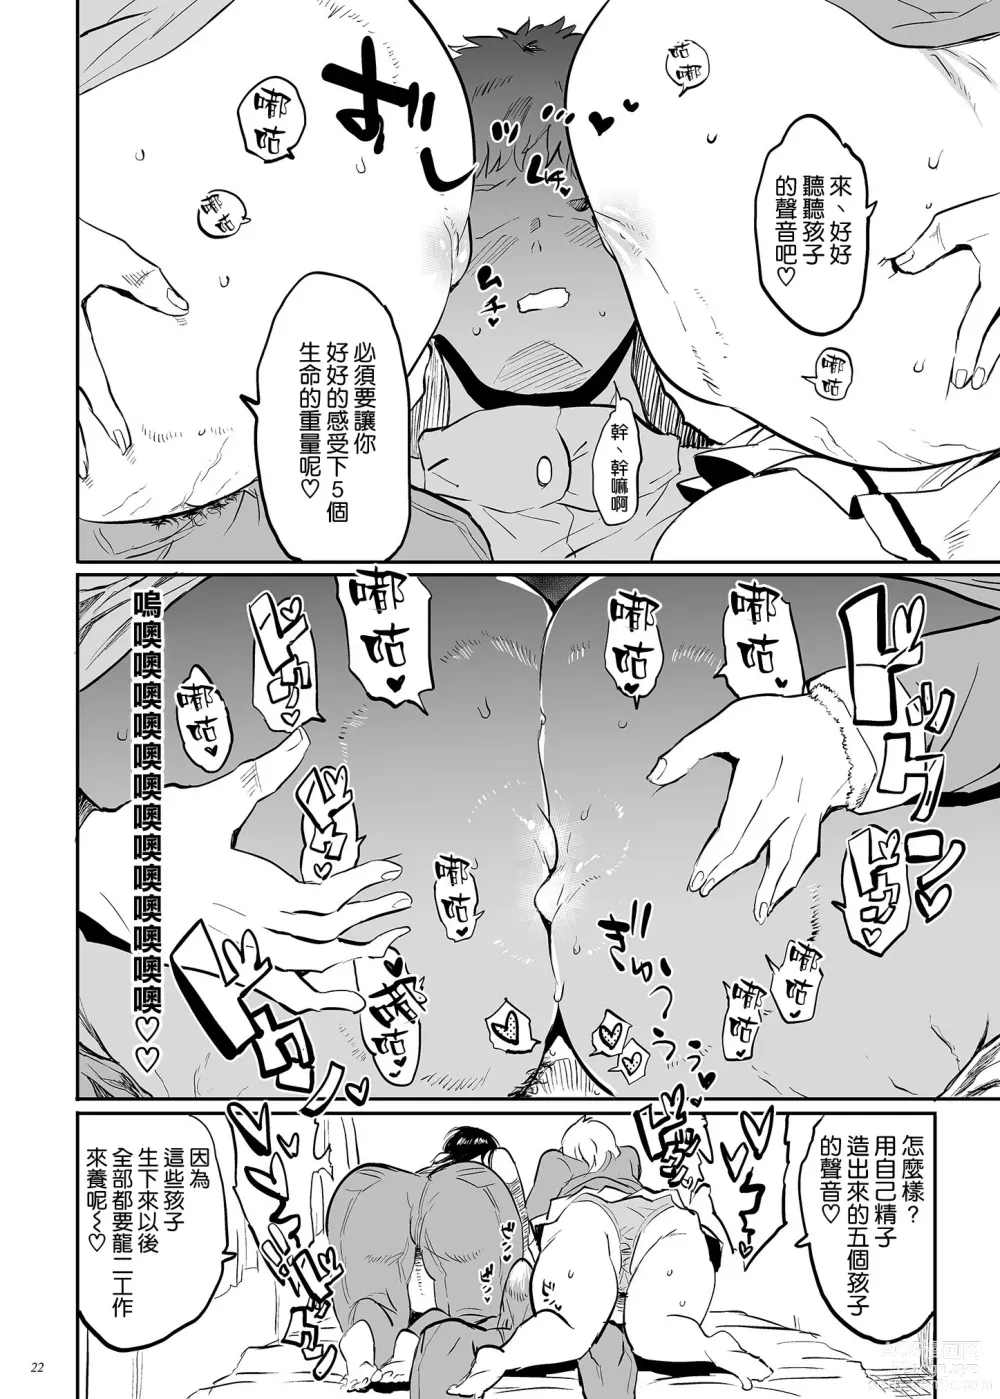 Page 22 of doujinshi Kore, Haha desu. 3